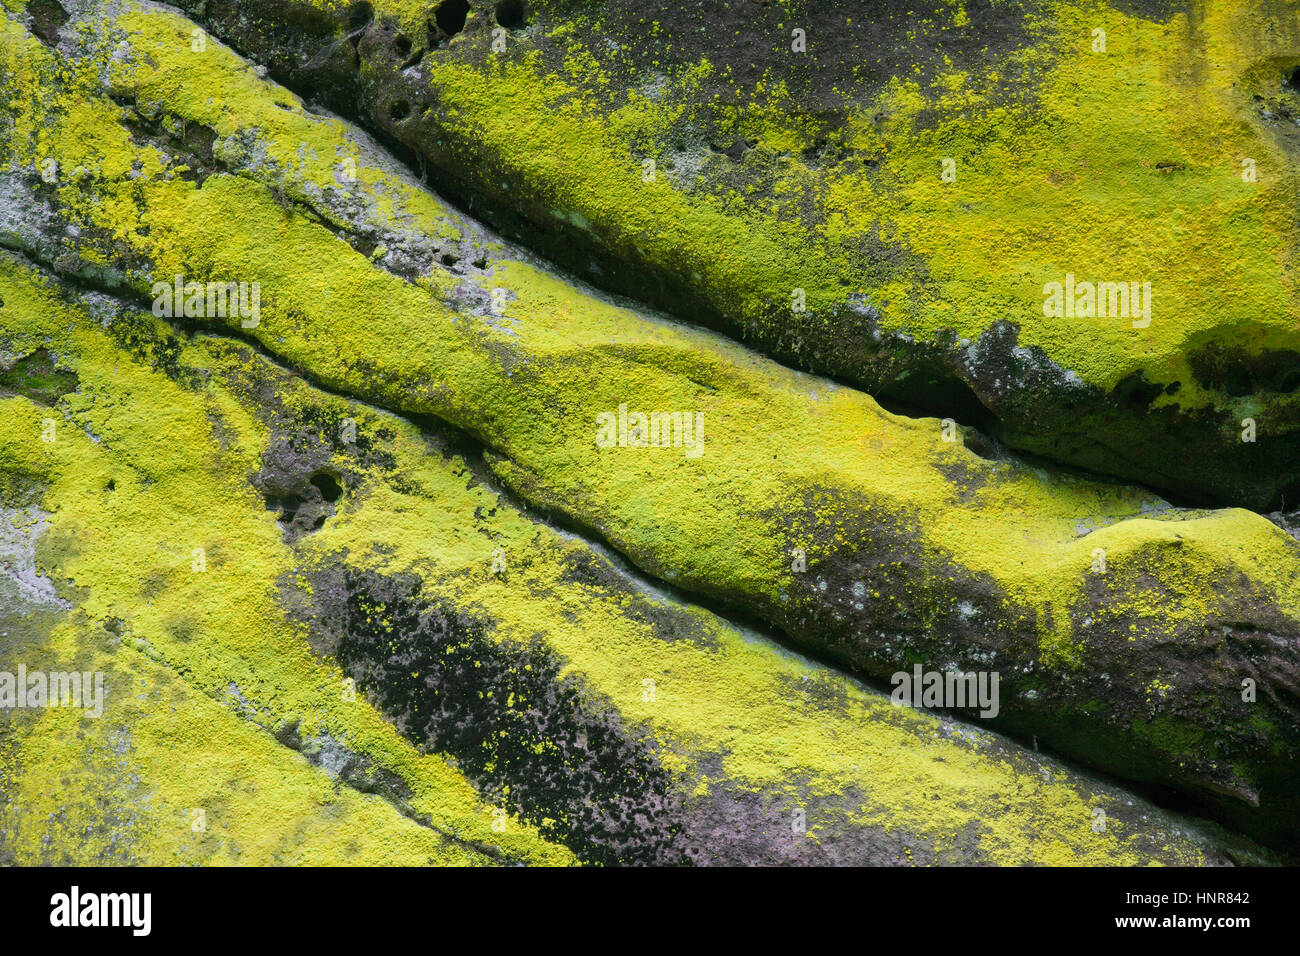 La polvere di zolfo lichen / verdastra polvere d oro lichen (Chrysothrix chlorina) sulla roccia arenaria Foto Stock